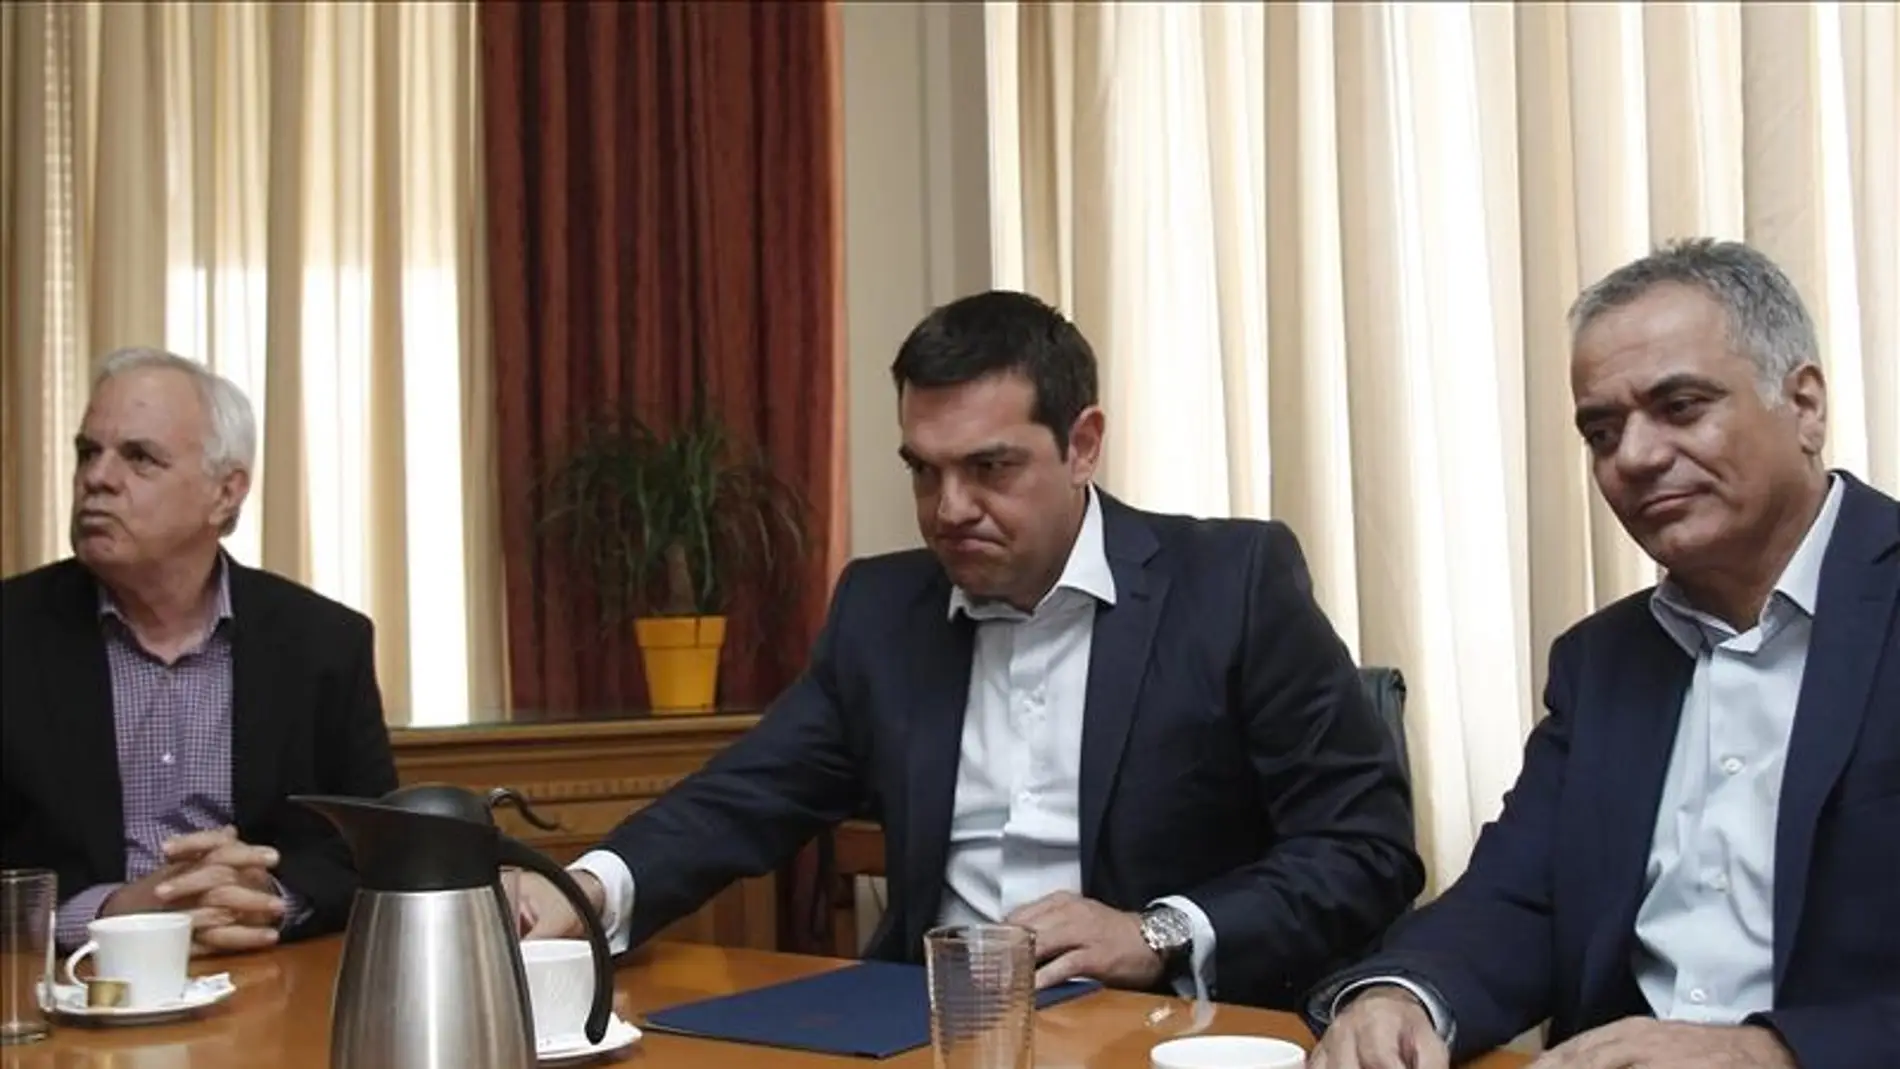 El primer ministro griego, Alexis Tsipras (c), junto al ministro de Energía, Panos Skurletis (d), y al ministro de Desarrollo Rural y Alimentación, Evangelos Apostolou, durante una reunión.